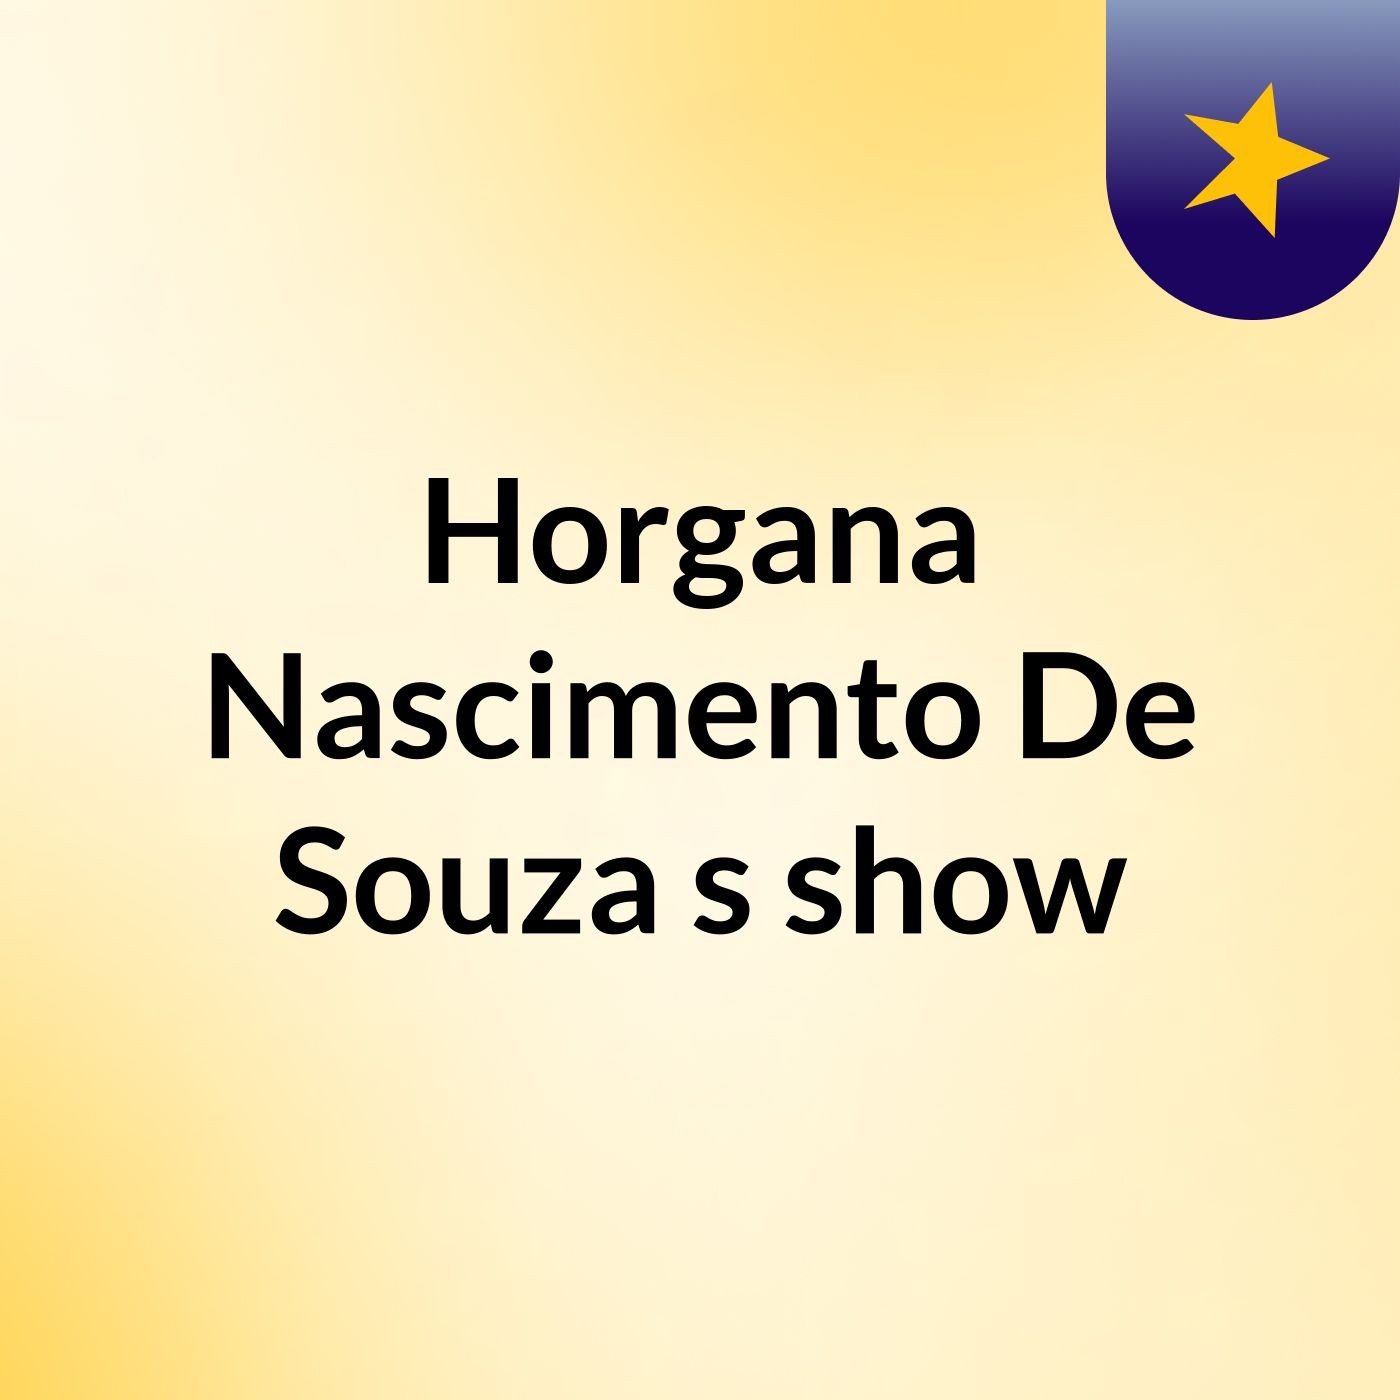 Horgana Nascimento De Souza's show